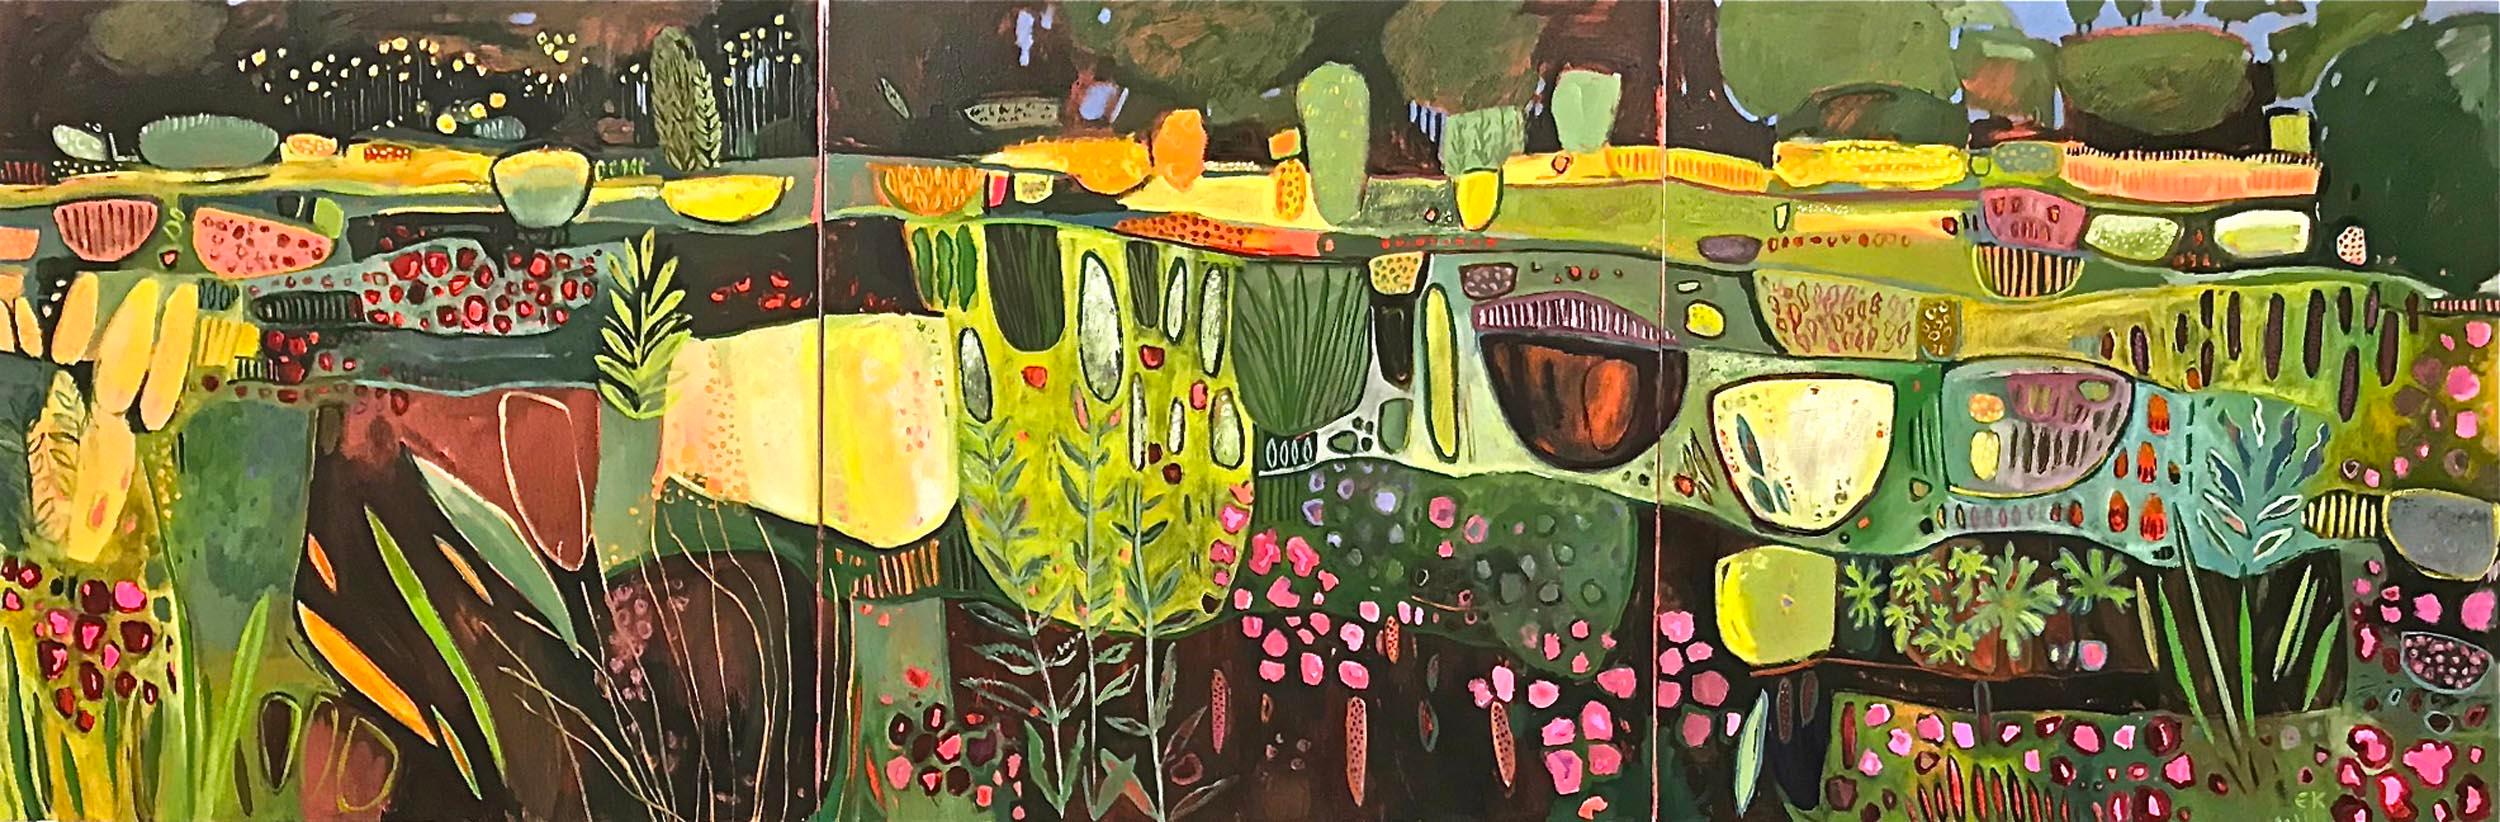 Elaine Kazimierczuk Abstract Painting – Amazing Fun in the Oxford Botanic Gardens, große abstrakte Landschaft, zeitgenössisch